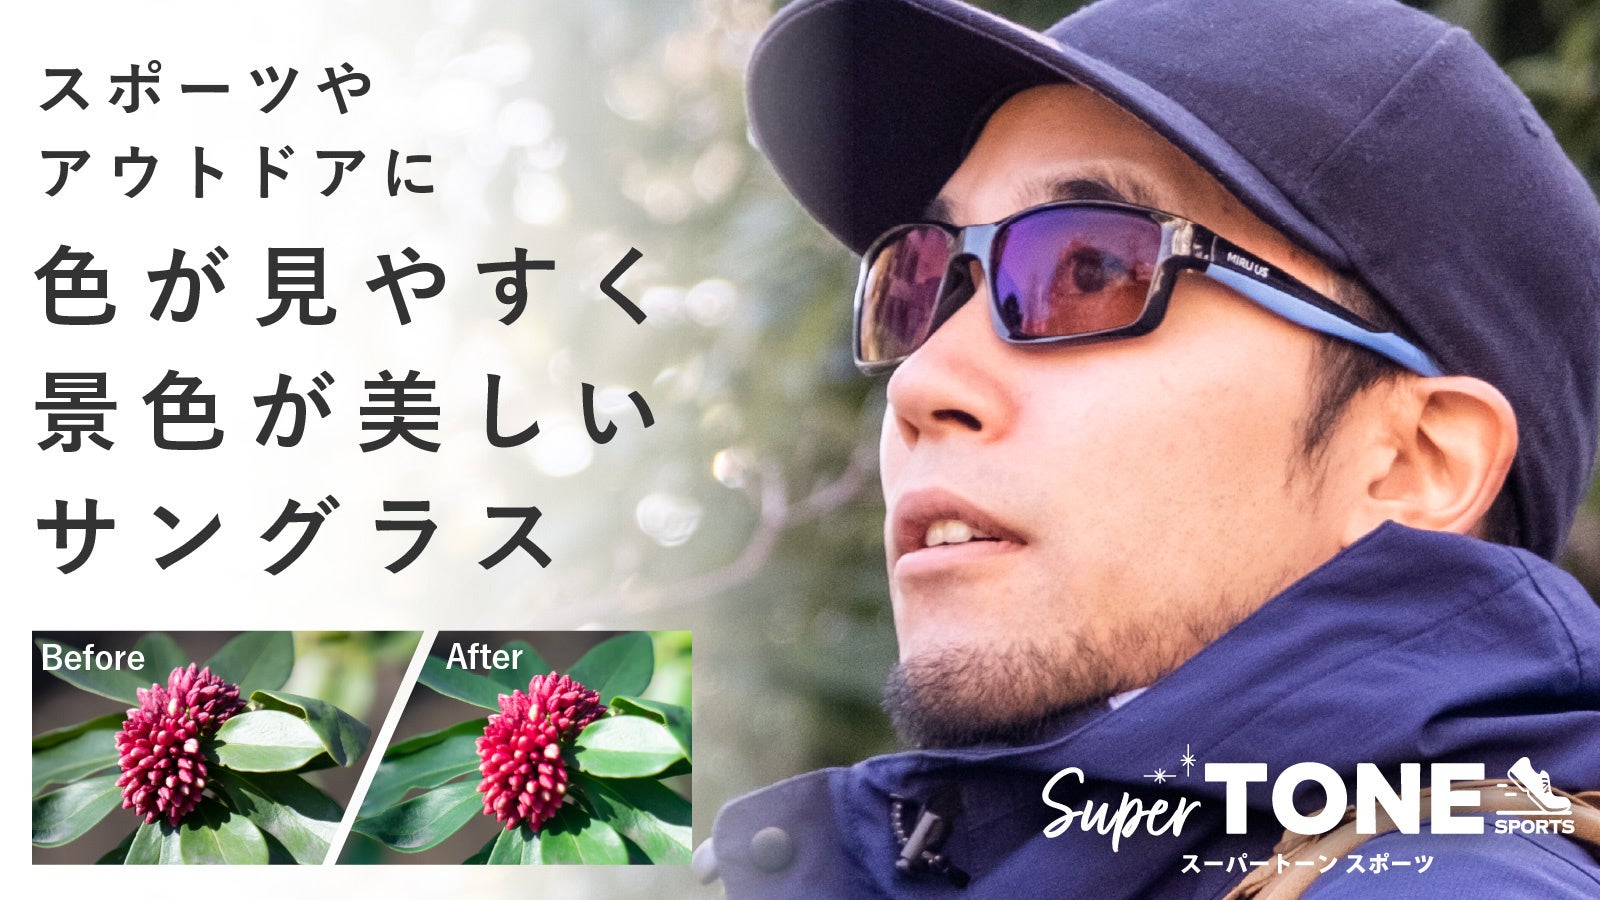 吉野山・嵯峨嵐山のサクラを空中散歩で楽しもう！ヘリコプターでお花見ができる、春の遊覧商品販売開始